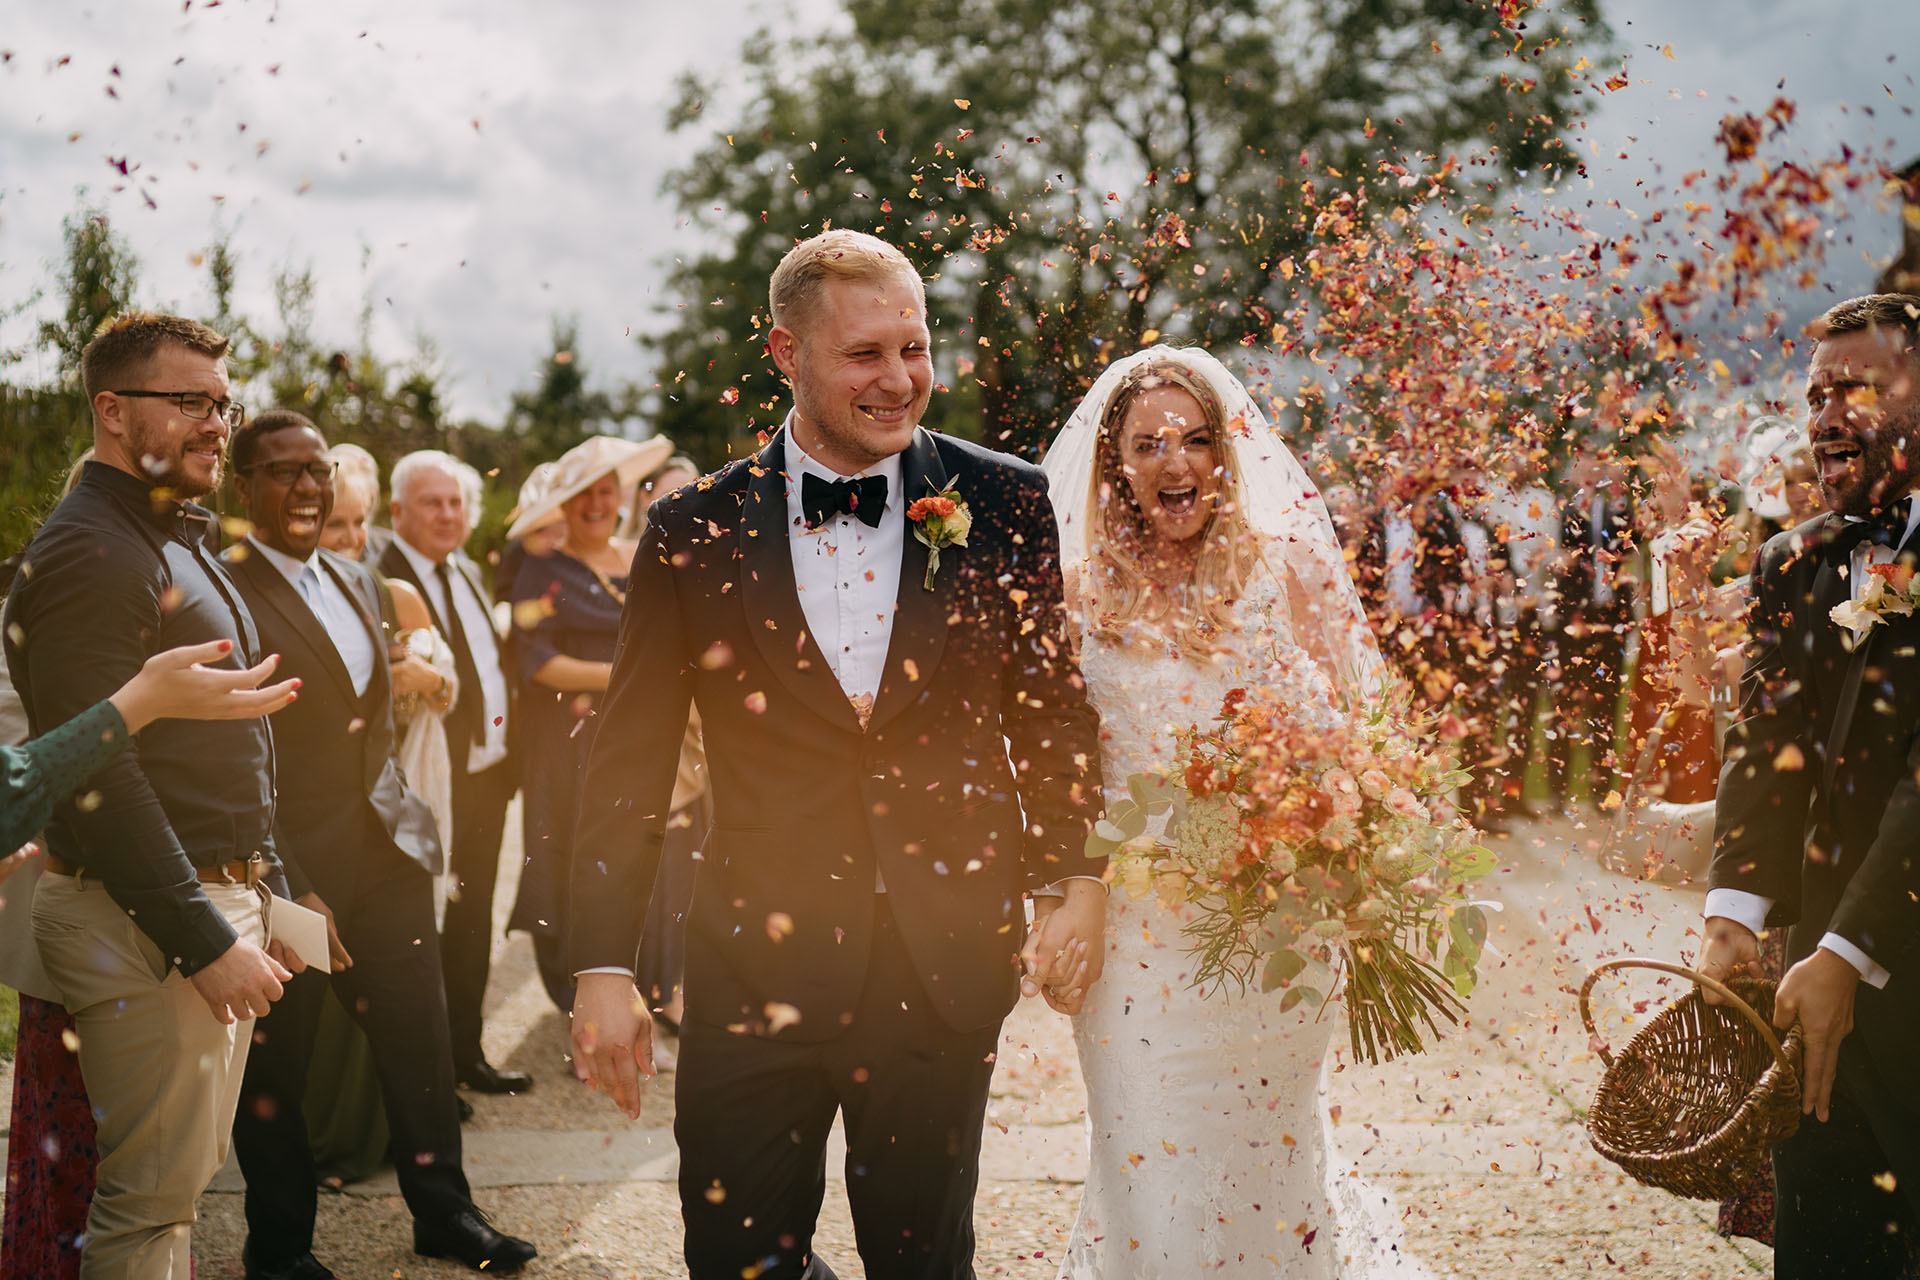 botley hill barn wedding confetti exit with lots of petals